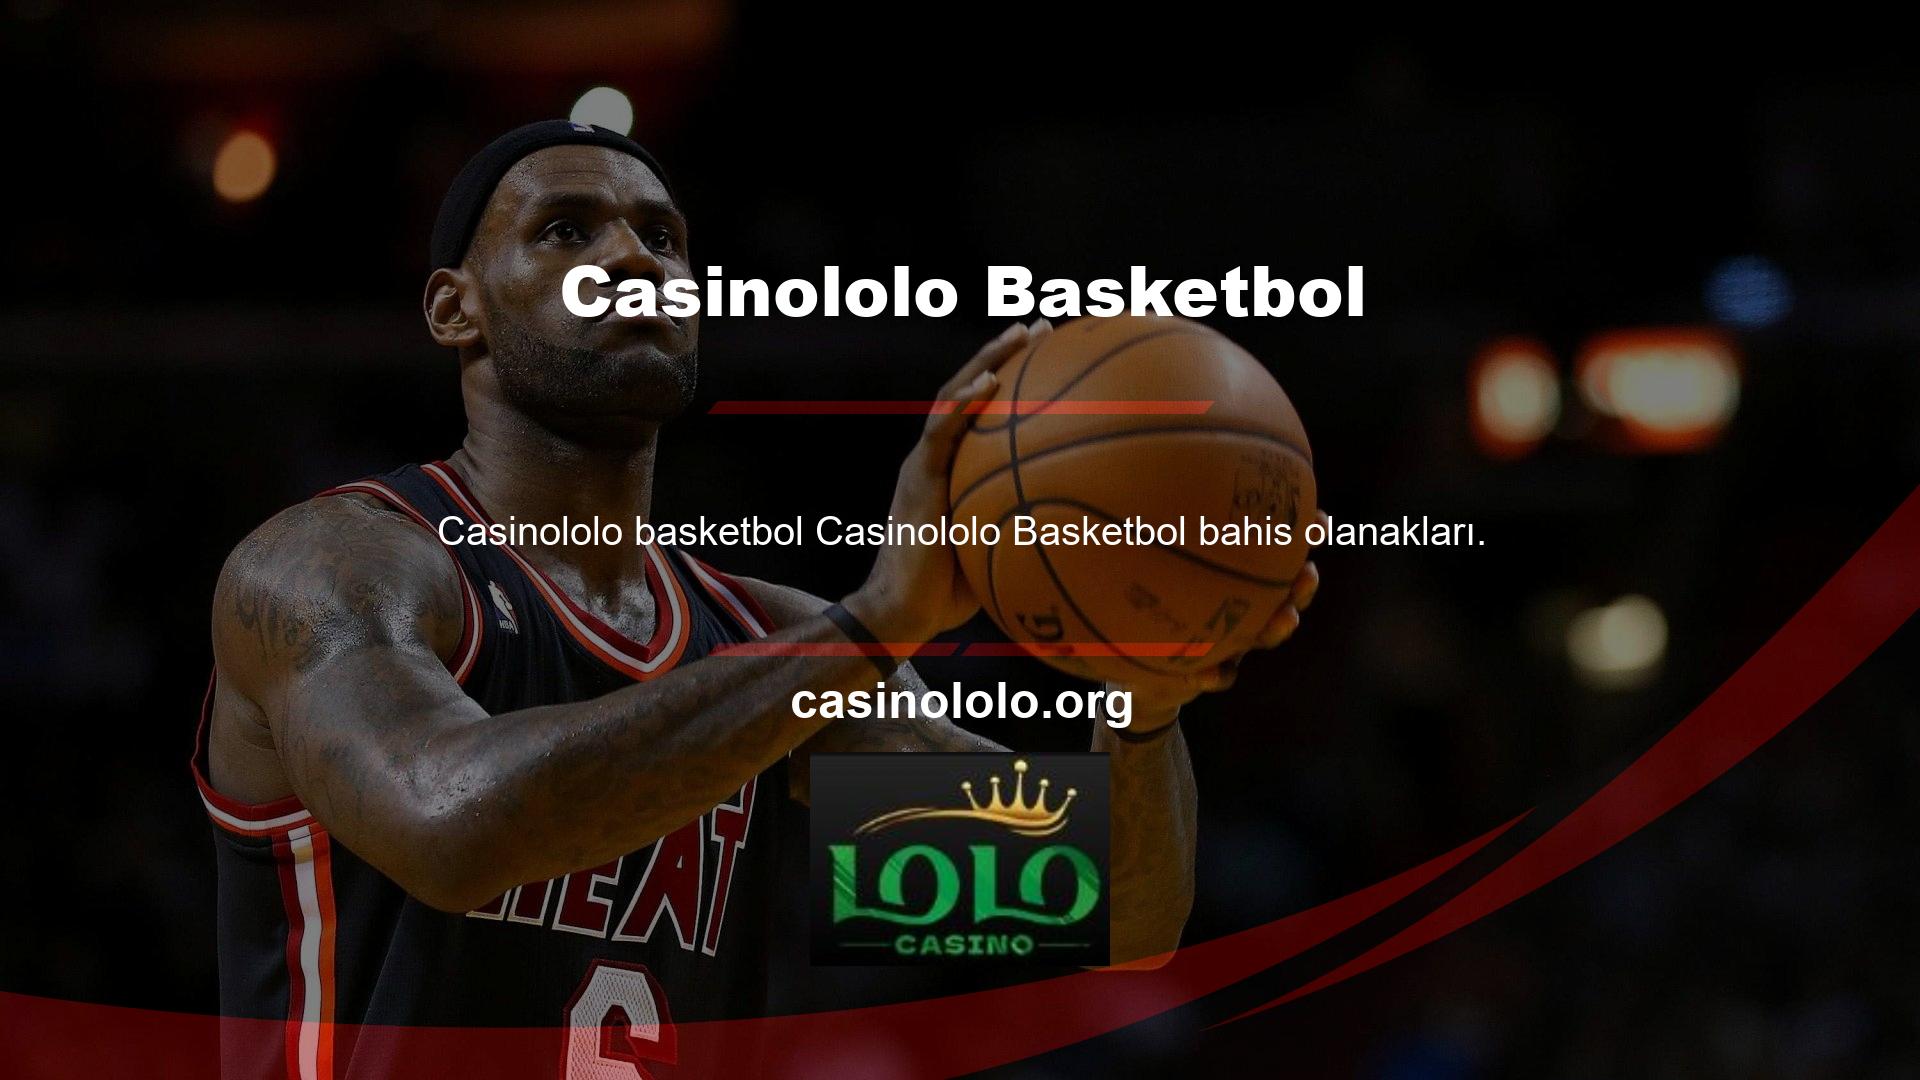 Casinololo basketbol yüzdesi çok yüksek